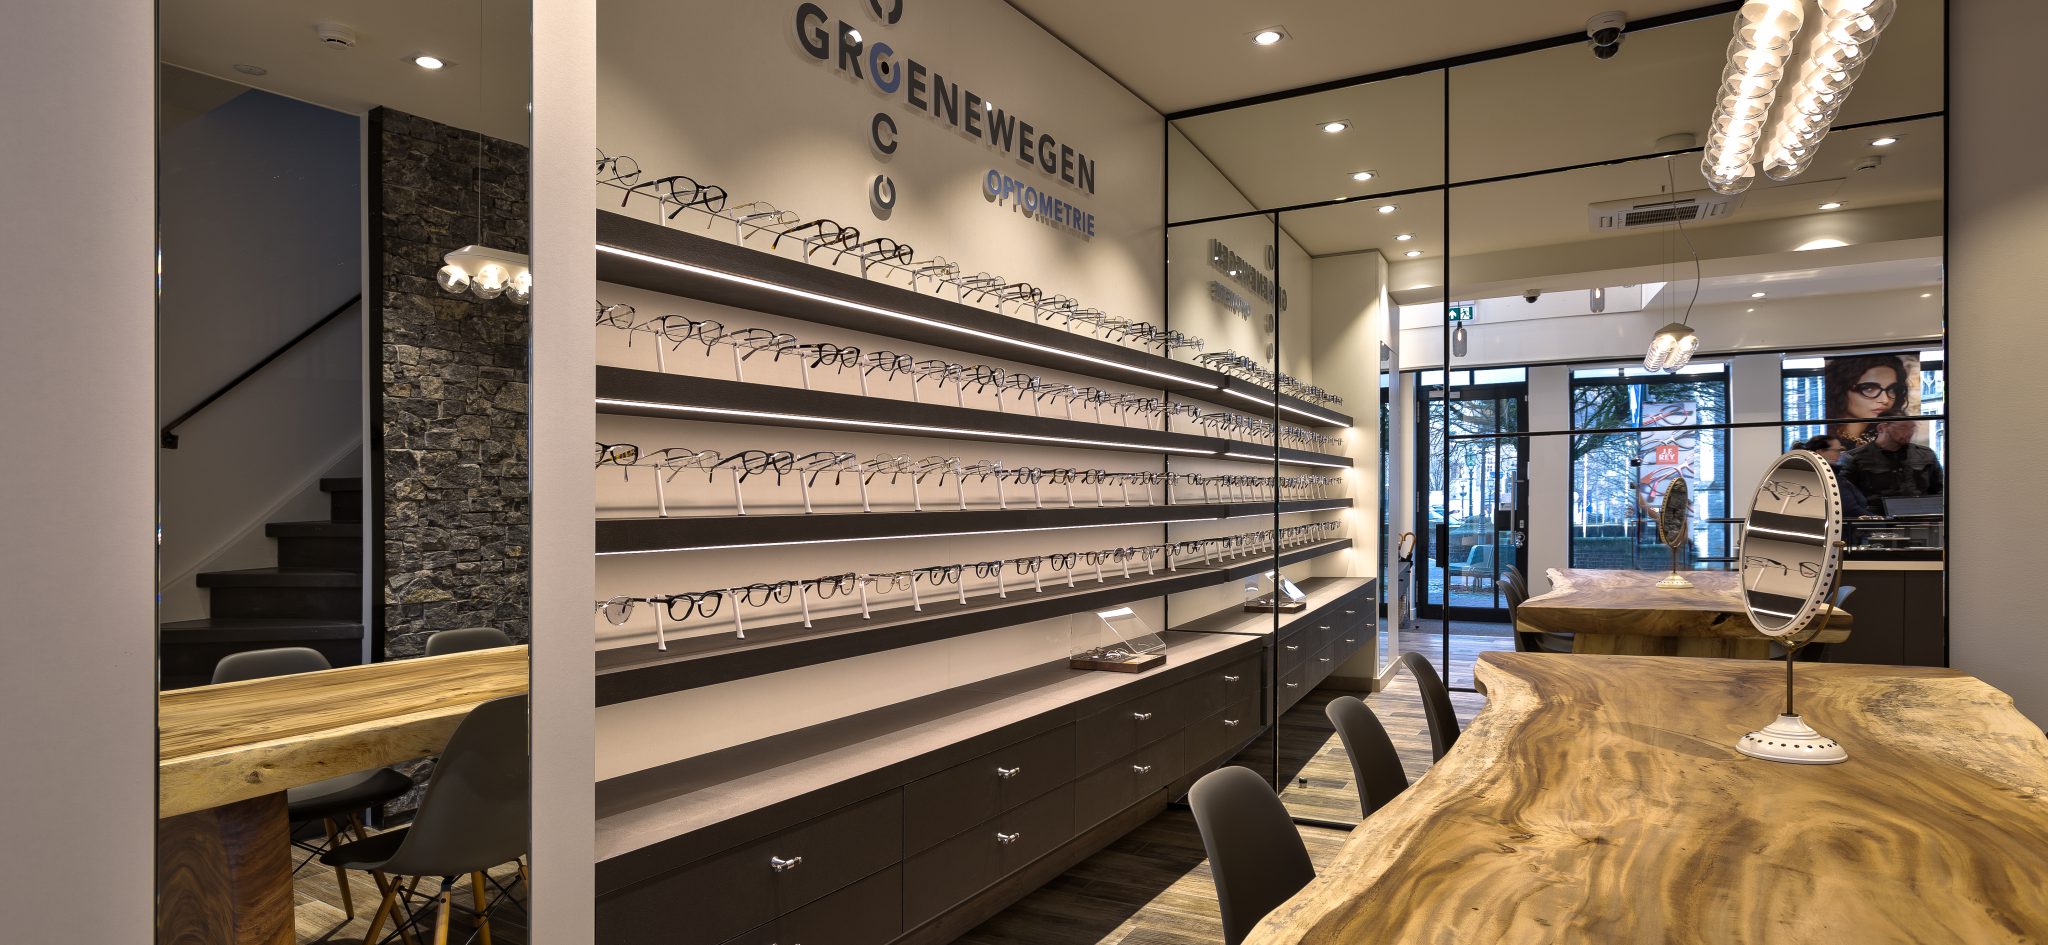 Groenewegen Opthometrie | Hulst (NL) - Optician